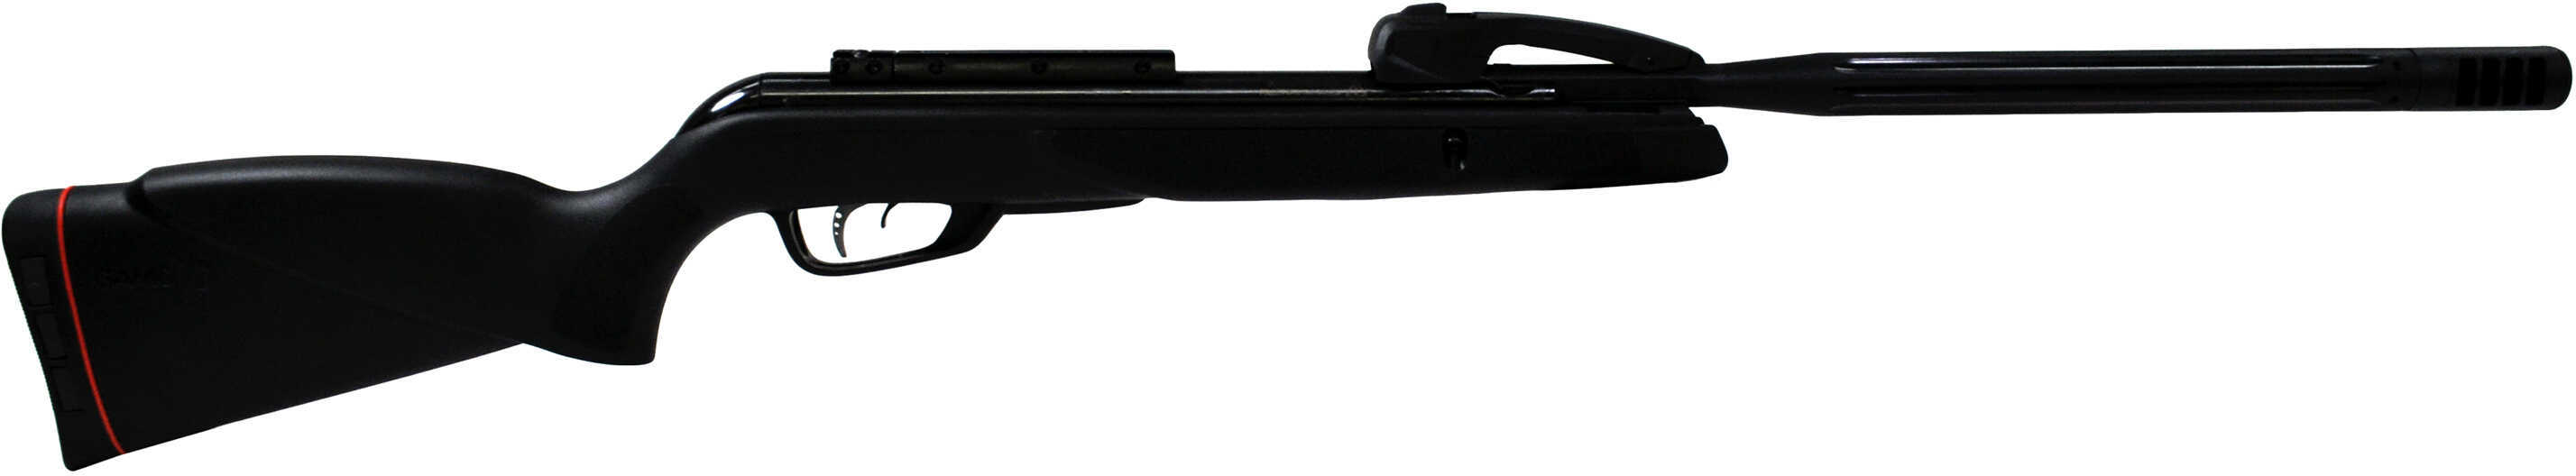 Gamo Swarm Maxxim Air Rifle .177 Caliber